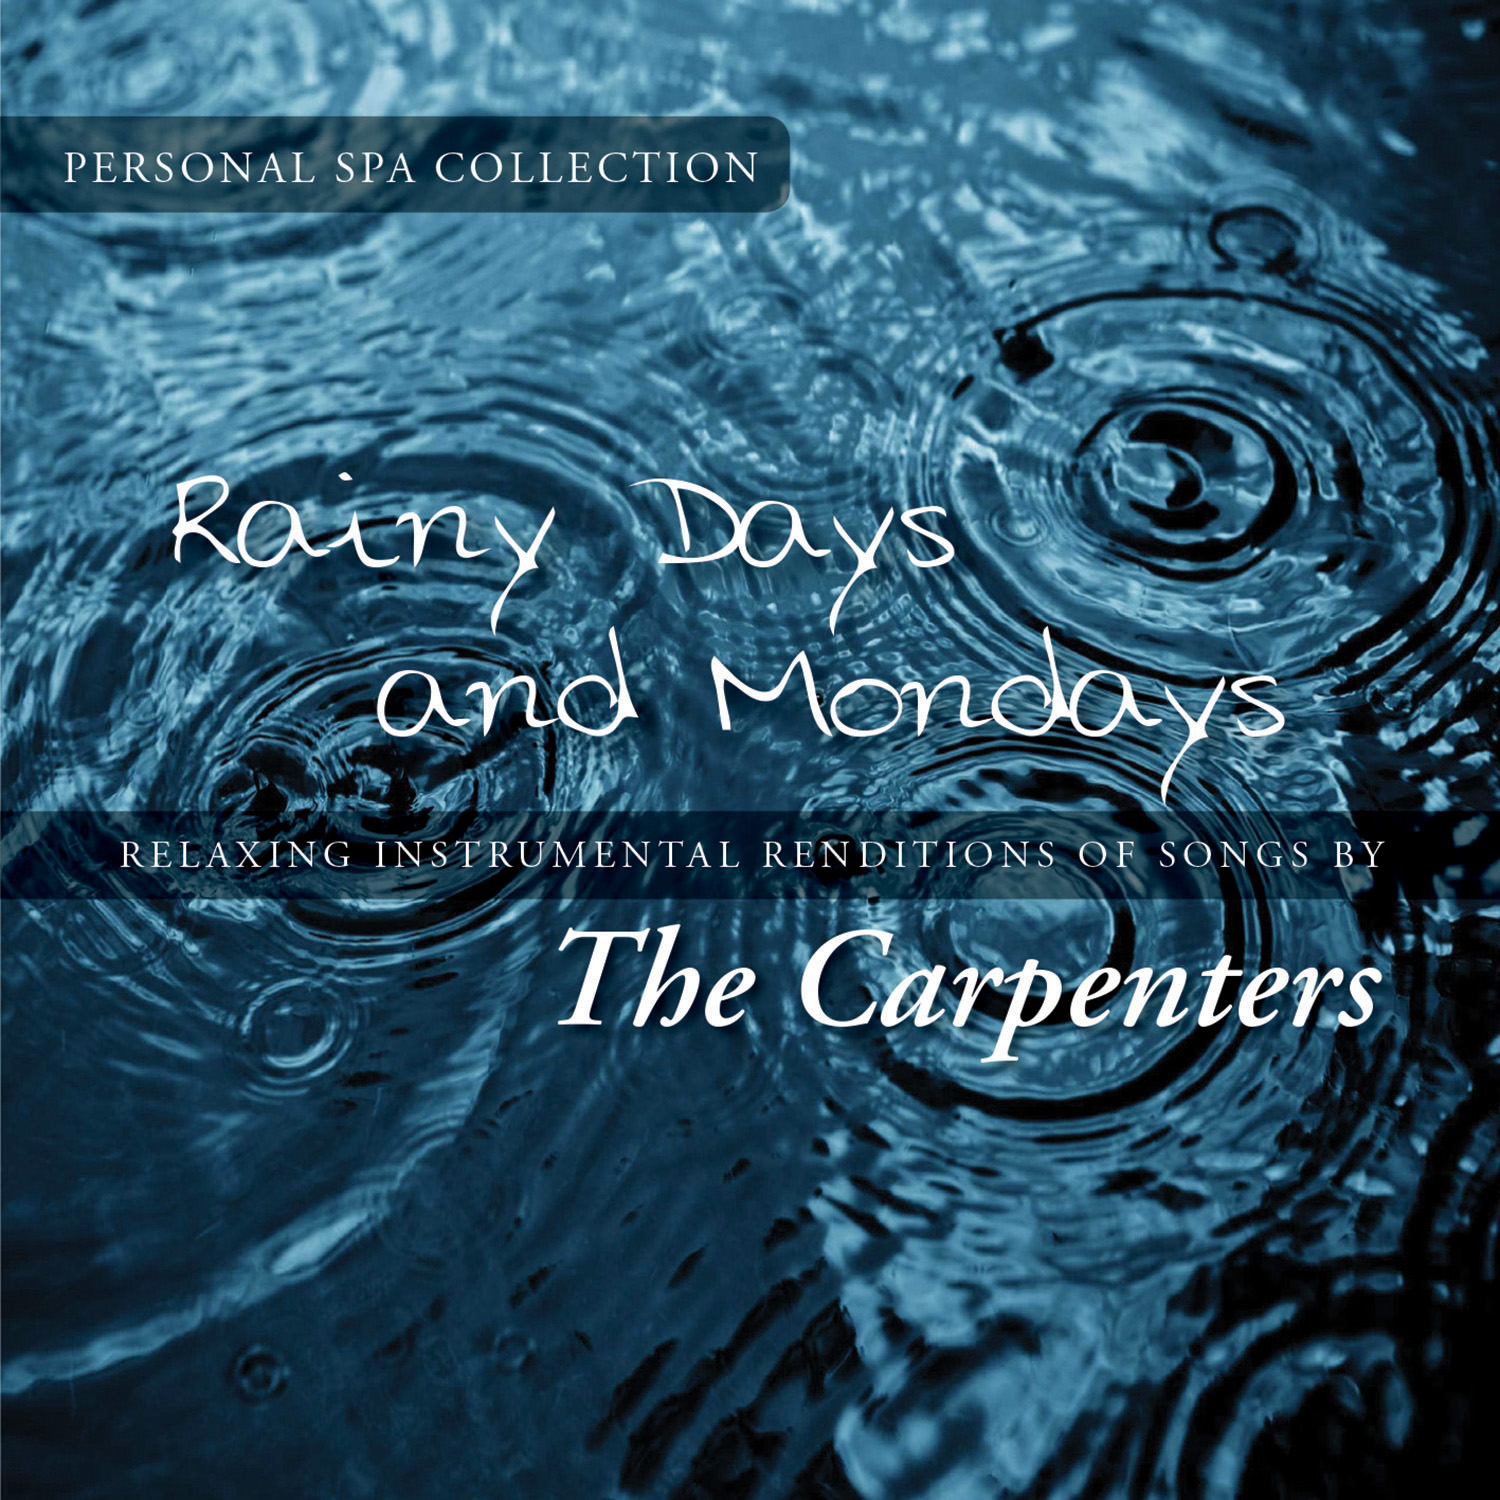 Rainy Days & Mondays – RPM Online